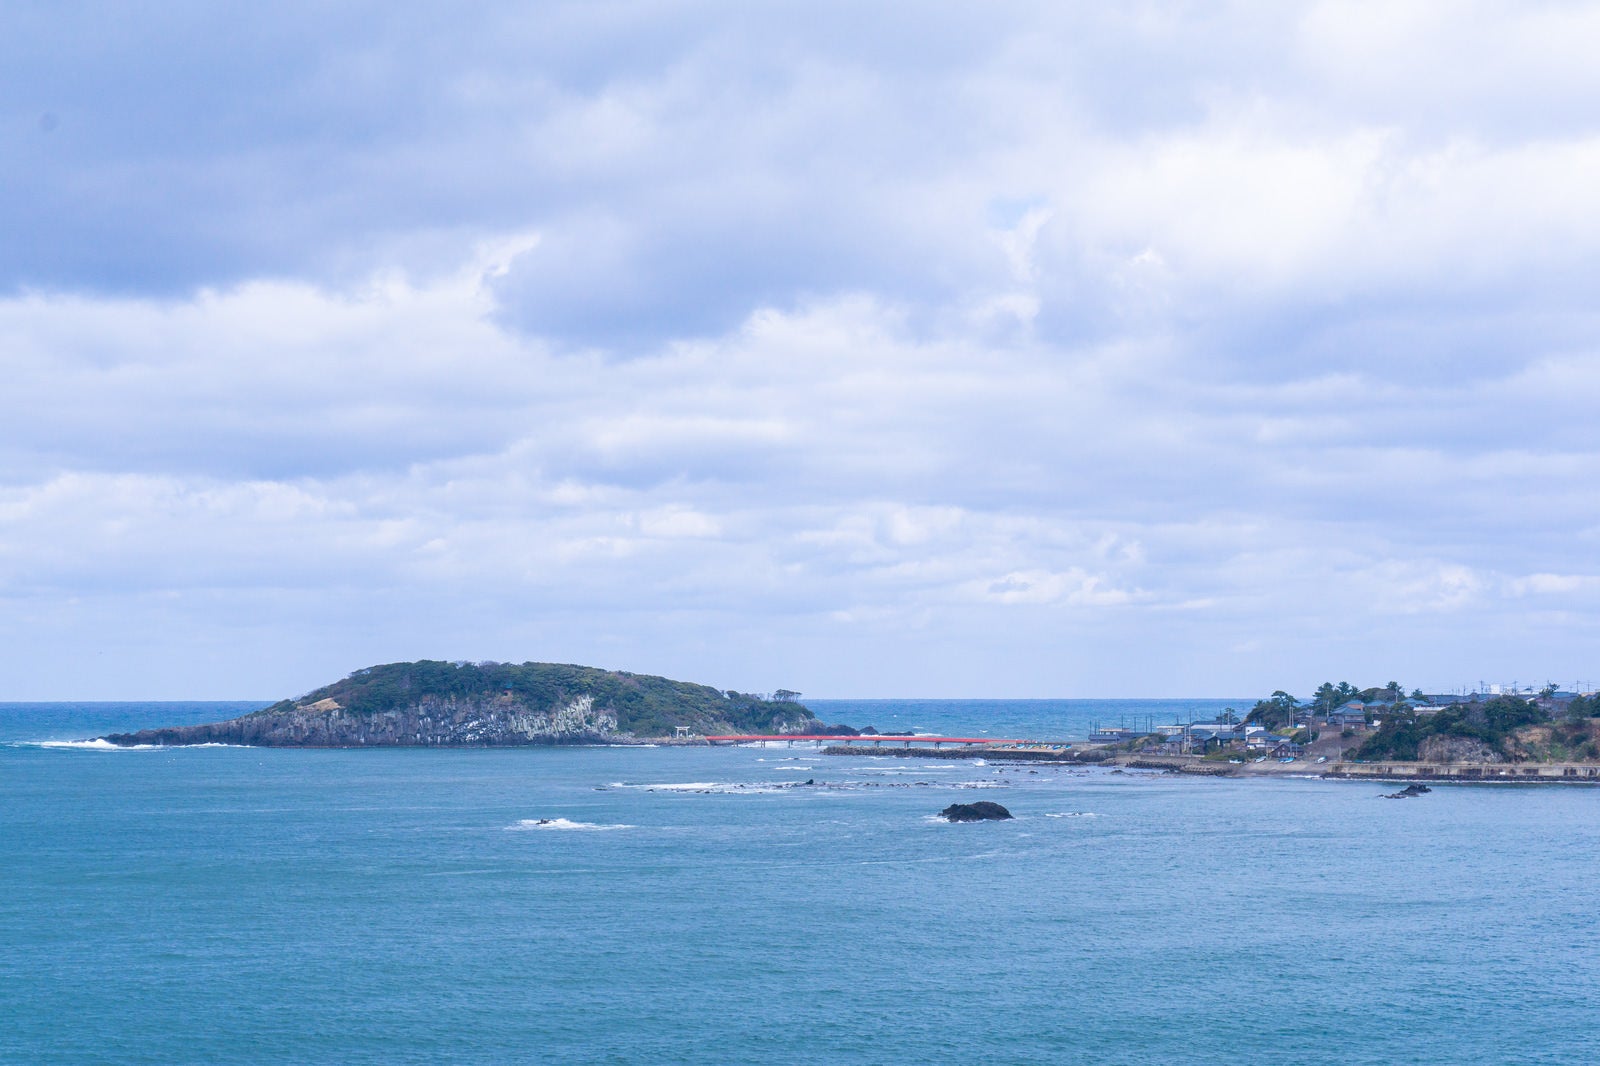 「東尋坊から見える海の神様の島と崇められる雄島と青い海にかかる赤い橋」の写真